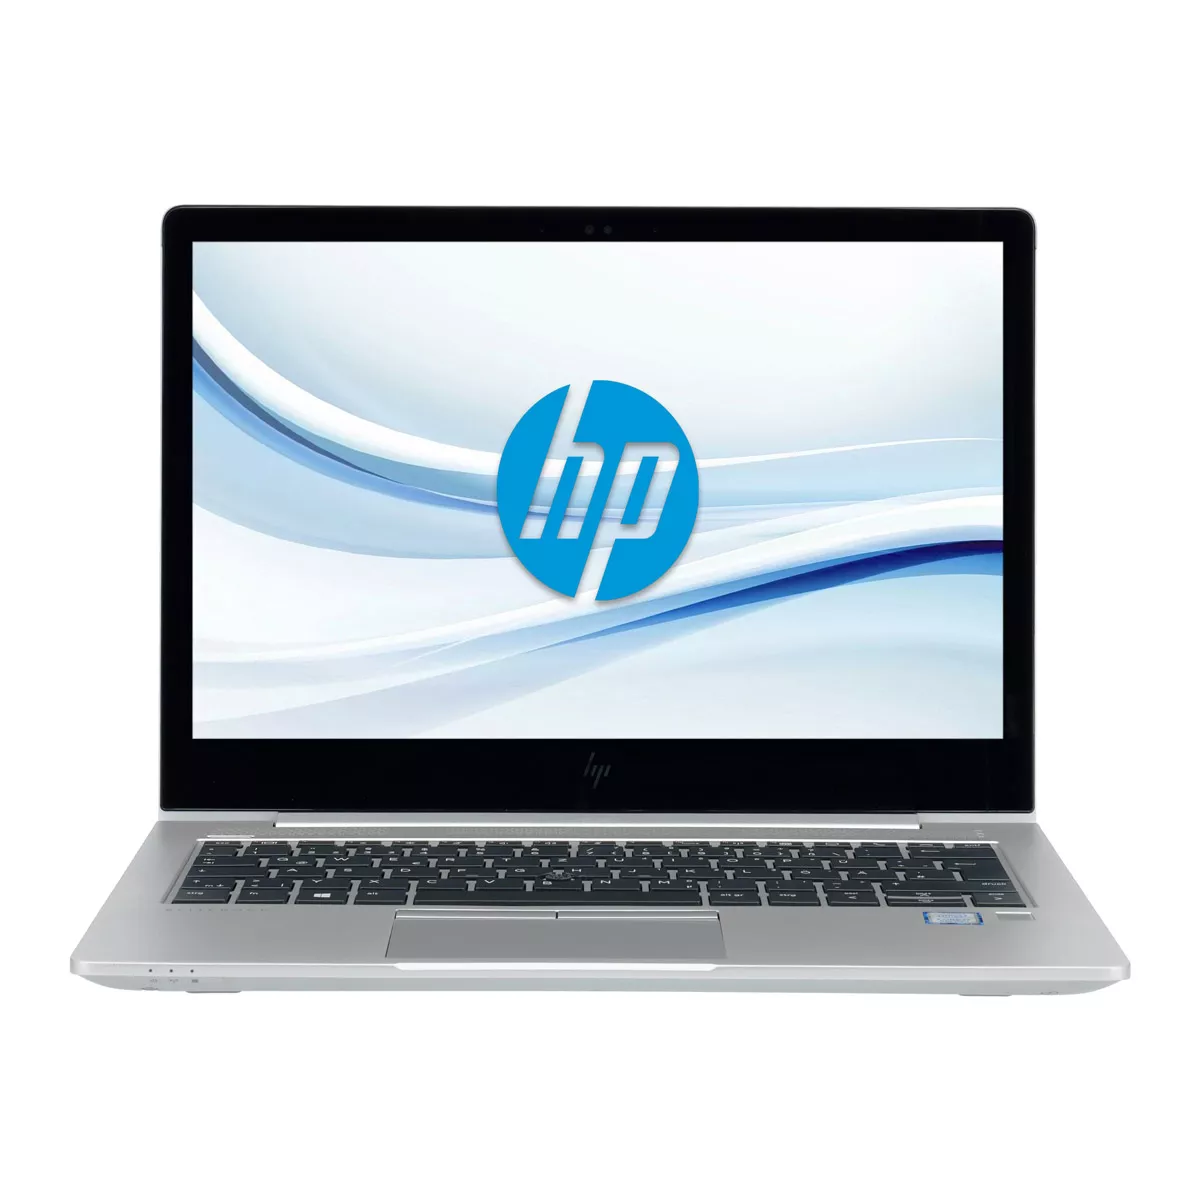 HP EliteBook 830 G5 Core i7 8550U 32 GB 500 GB M.2 nVME SSD Touch Webcam A+